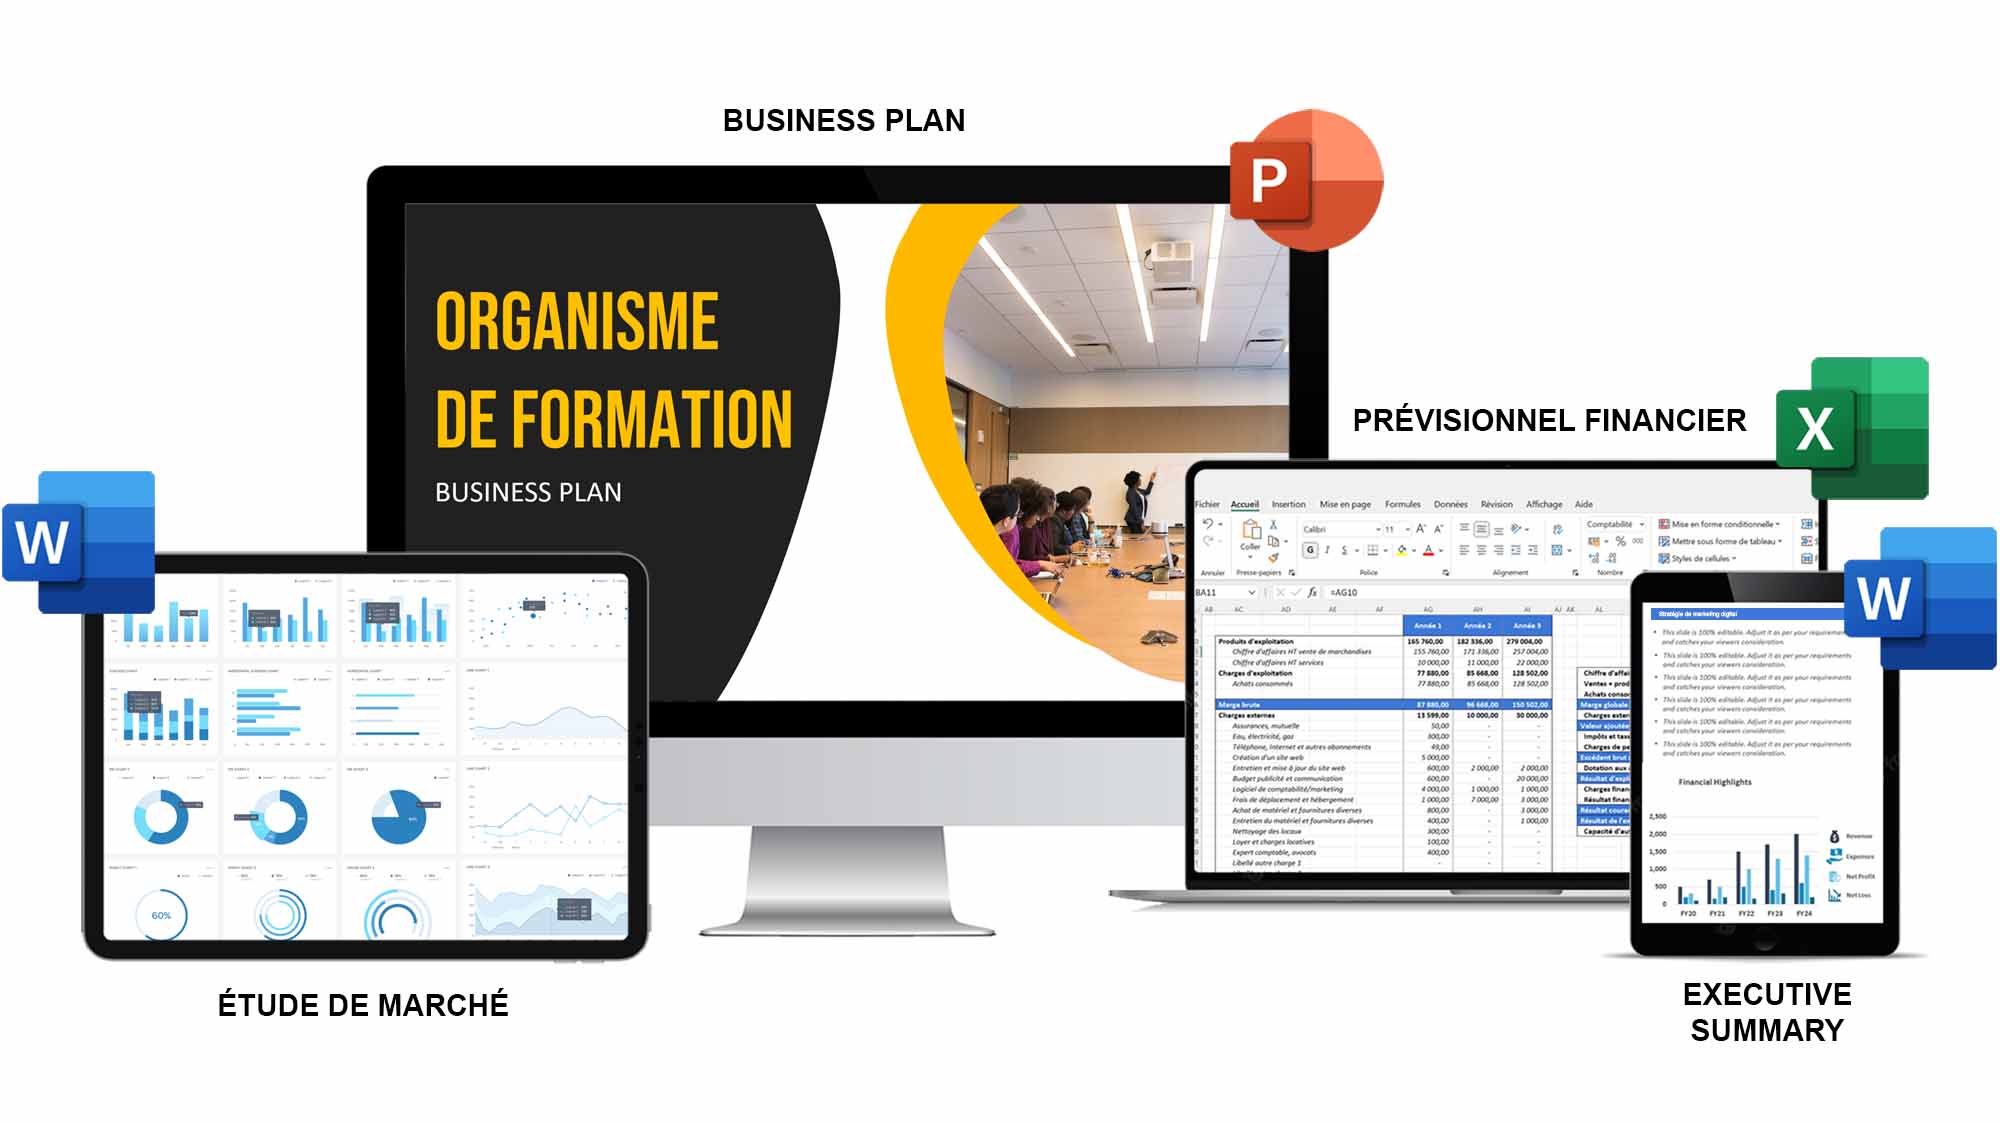 exemple business plan organisme de formation pdf